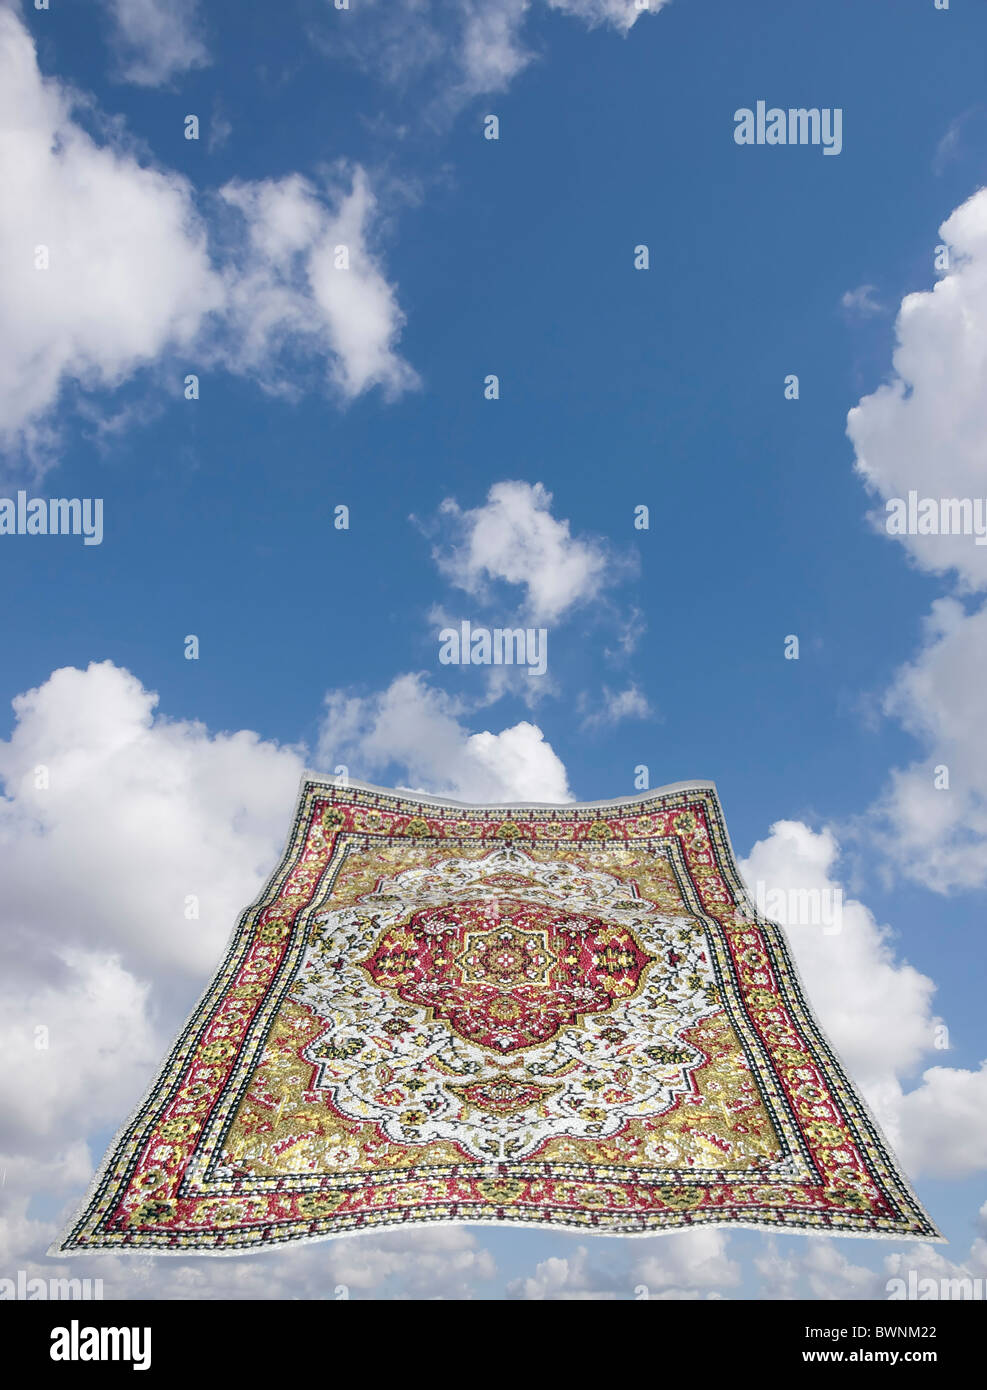 magic carpet in a blue sky Stock Photo